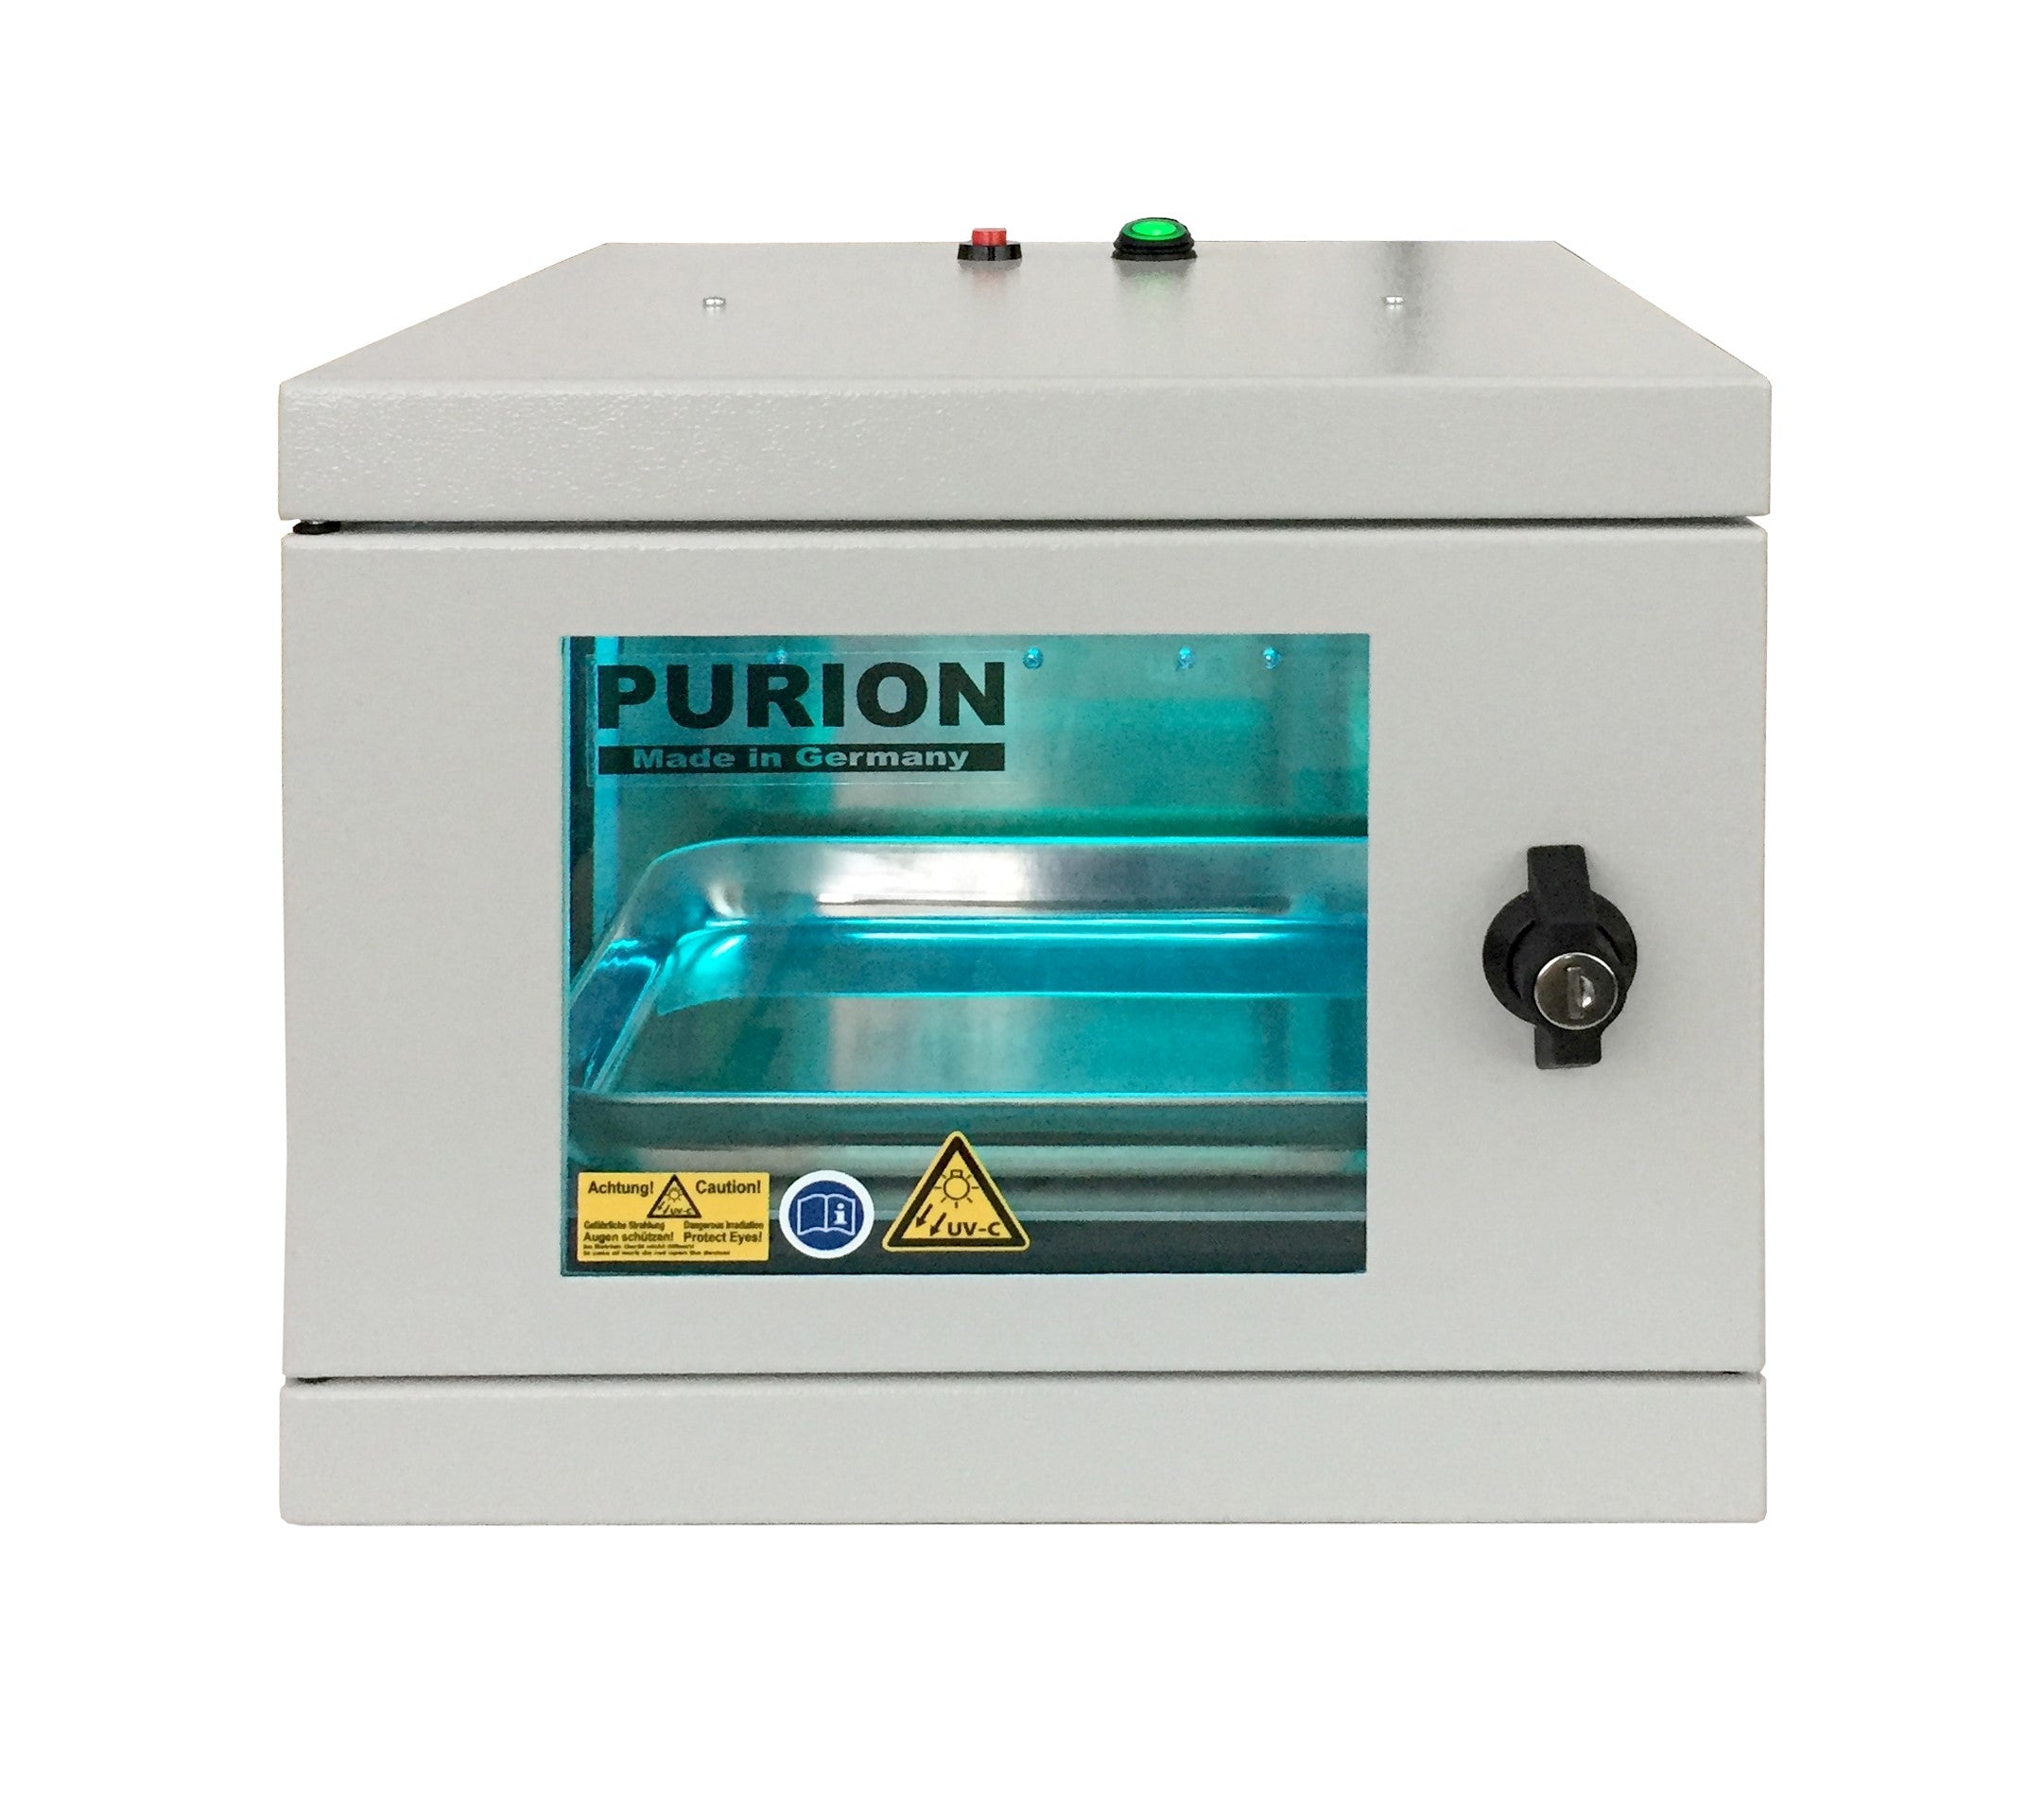 Das CNC-Bearbeitungszentrum PURION UVC Box Small Basic der Purion GmbH wird zur Desinfektion zur Beseitigung von Keimen eingesetzt.